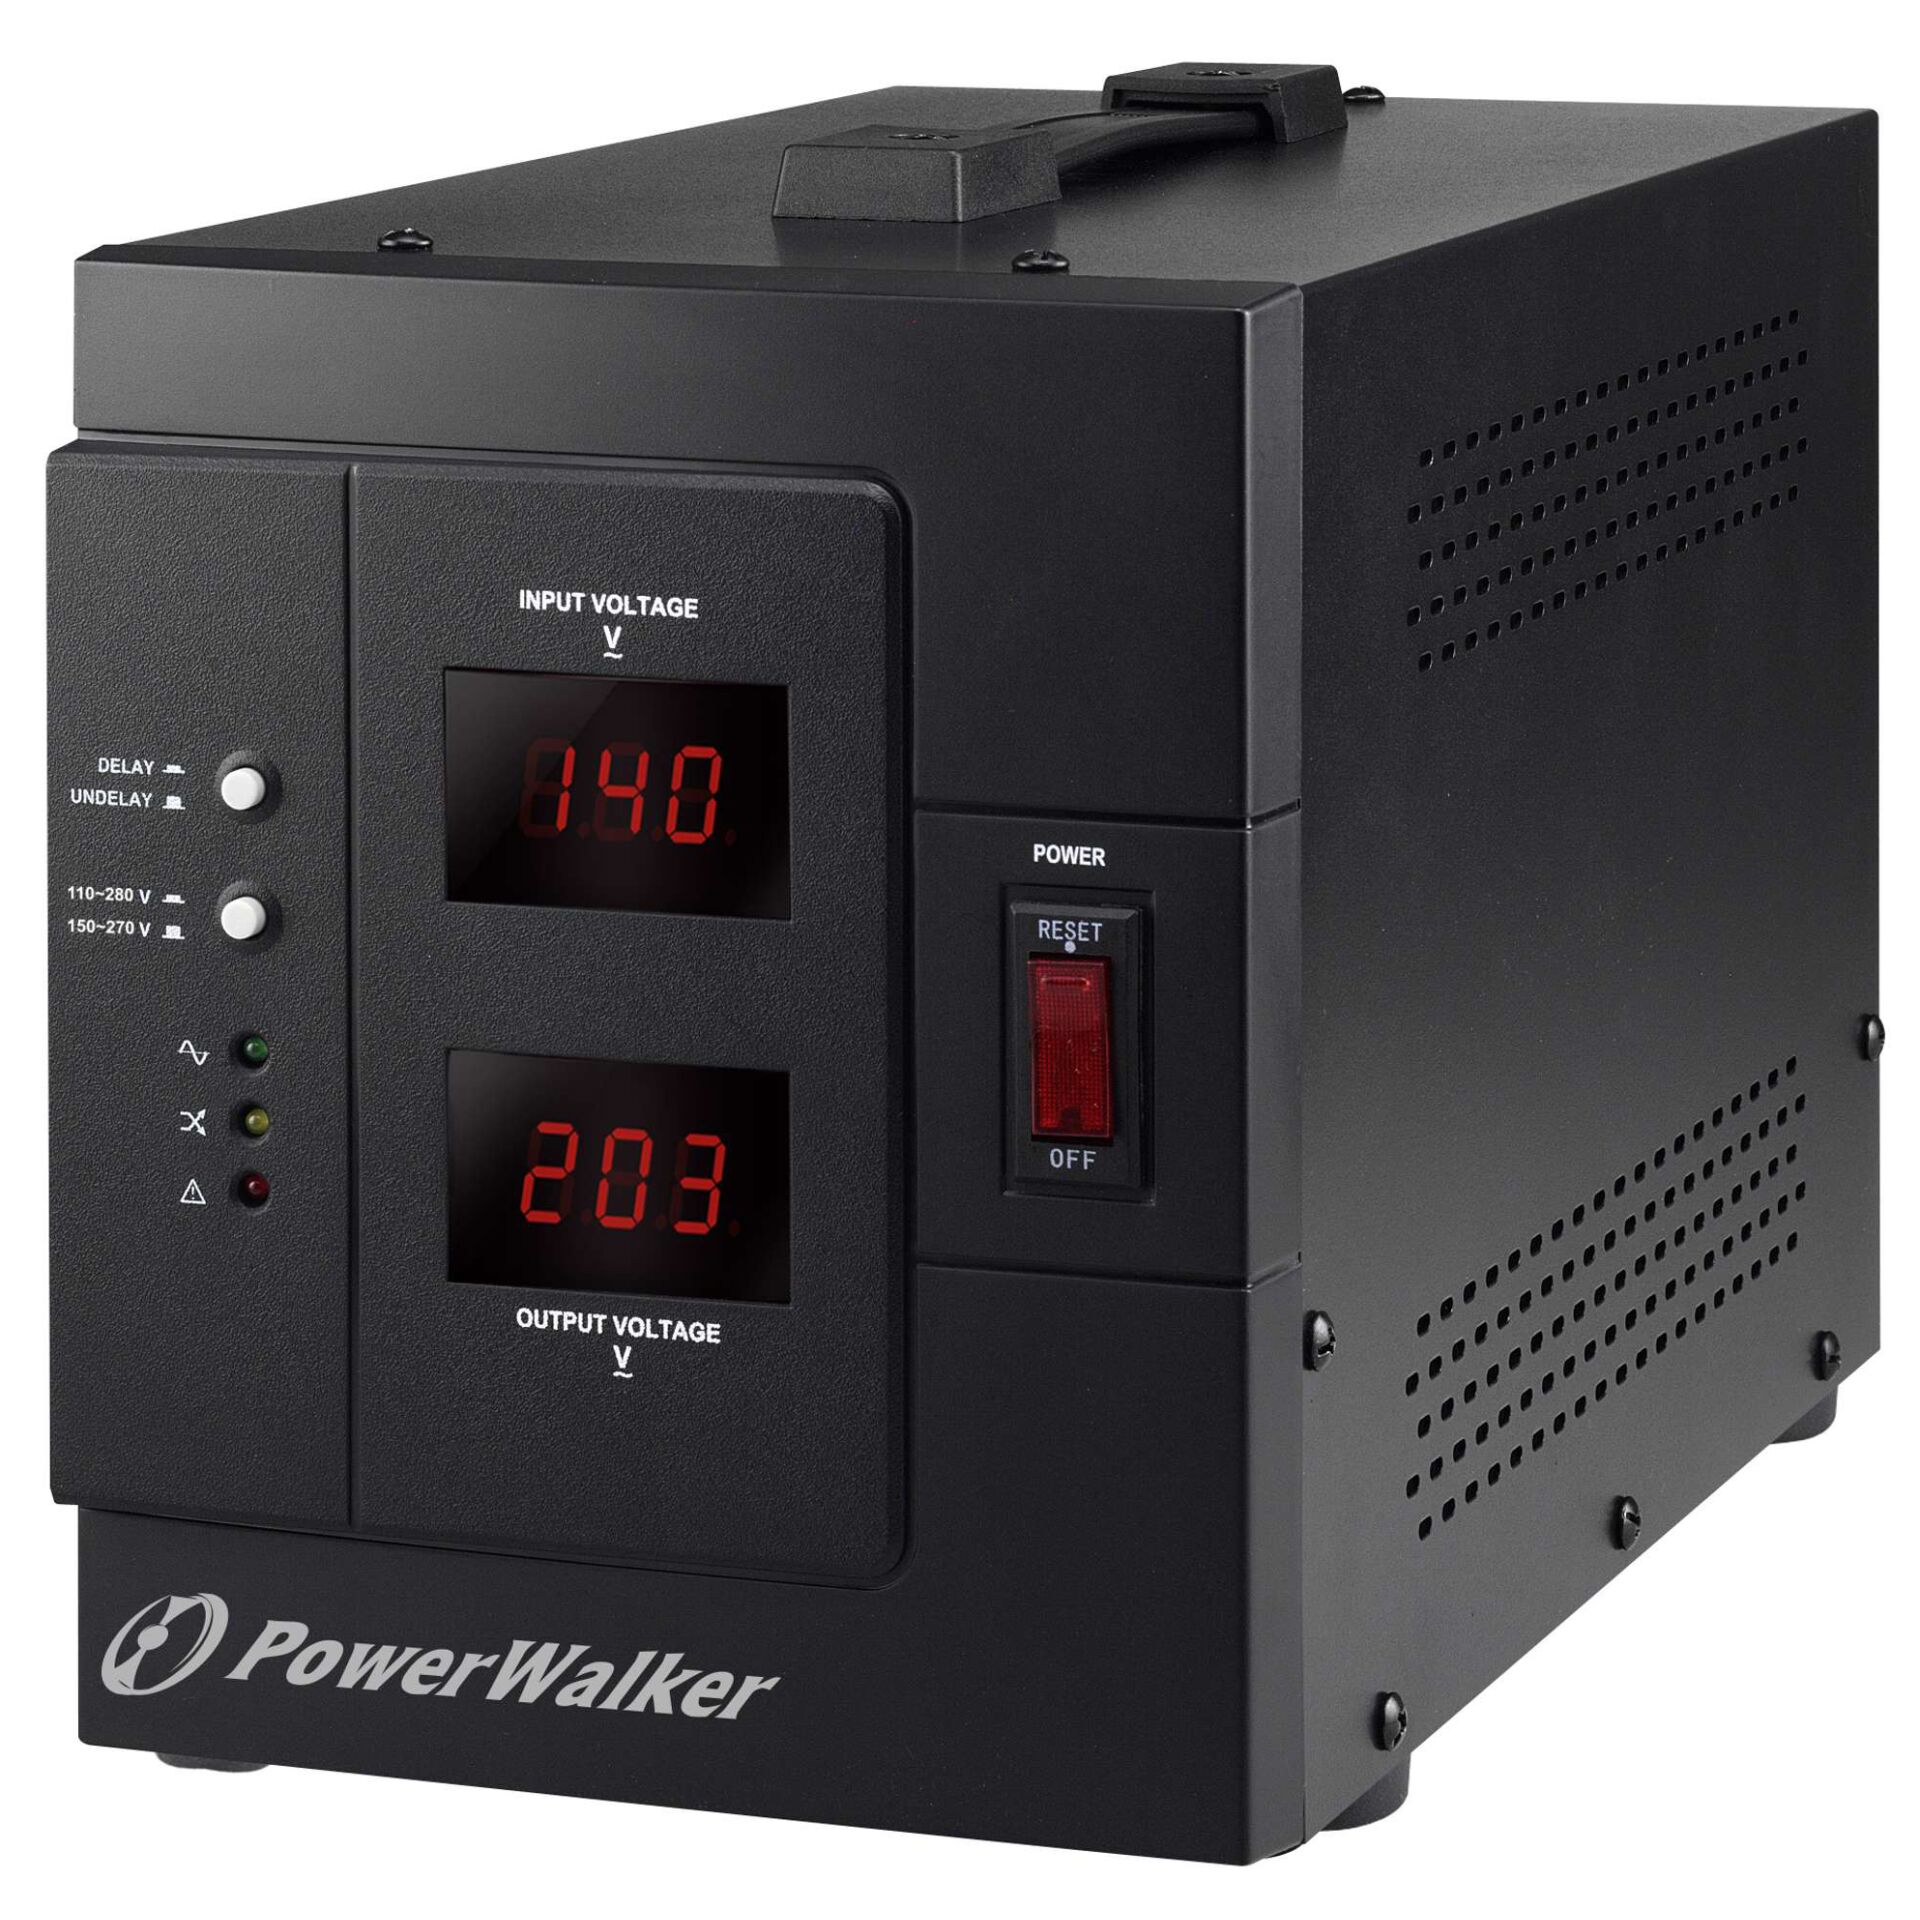 BlueWalker PowerWalker AVR 3000 SIV, FR